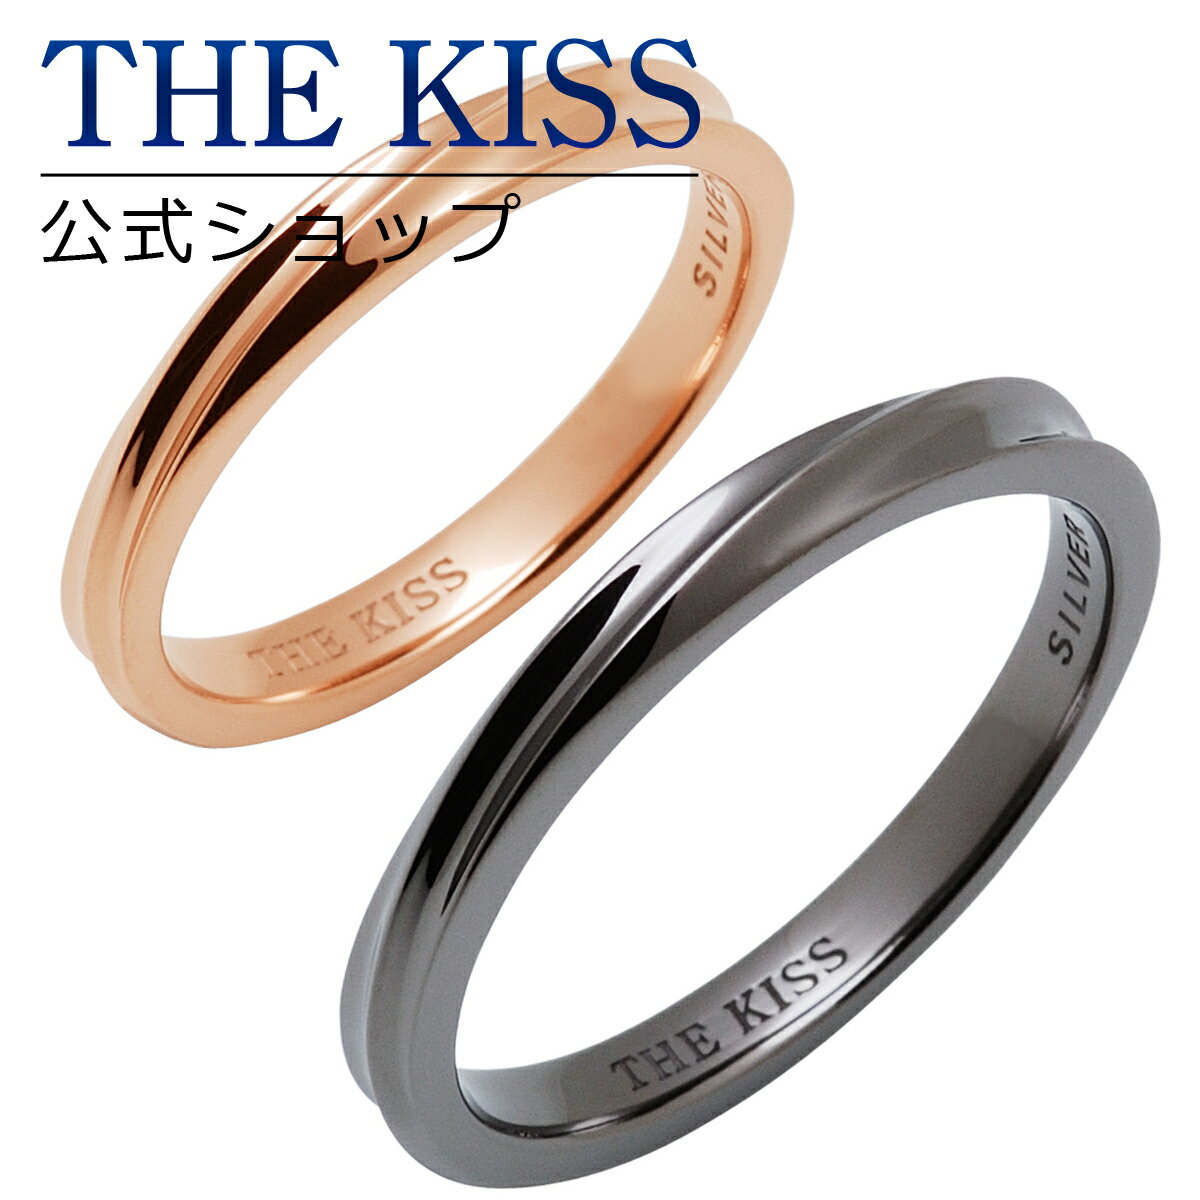 【ラッピング無料】THE KISS 公式ショップ シルバー ペアリング ペアアクセサリー カップル に 人気 の ジュエリーブランド THEKISS ペア リング・指輪 プレゼント SR1836-1837 セット シンプル 細身 男性 女性 2個セット ブライダル【あす楽対応（土日祝除く）】